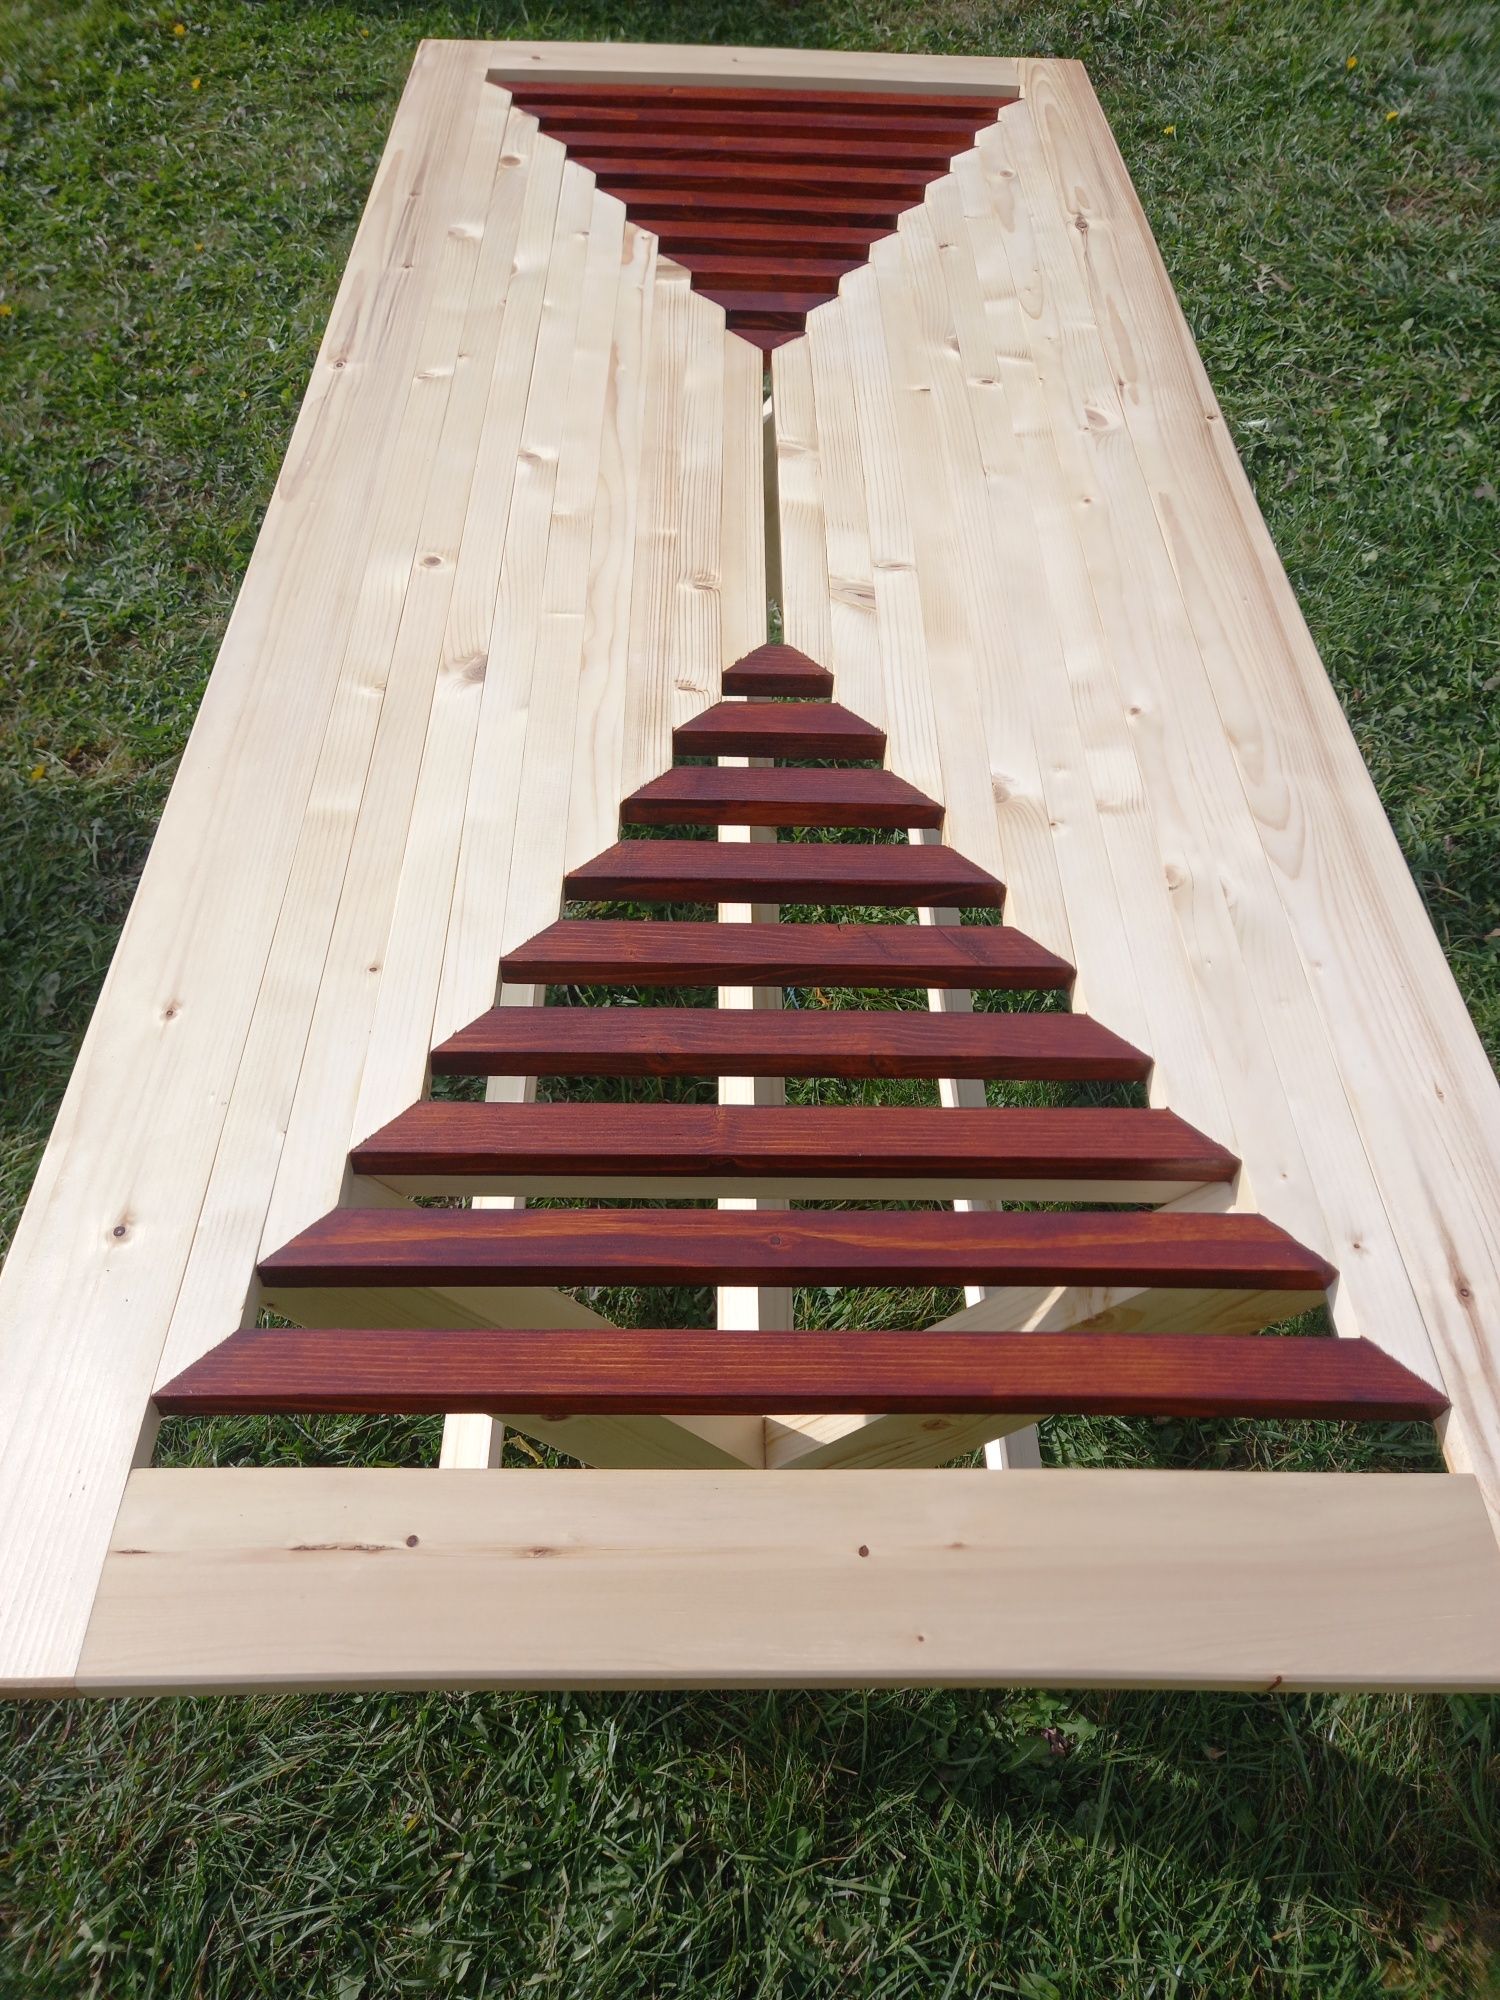 Masă din lemn  de brad lucrată manual  pentru terasă.,foișor,